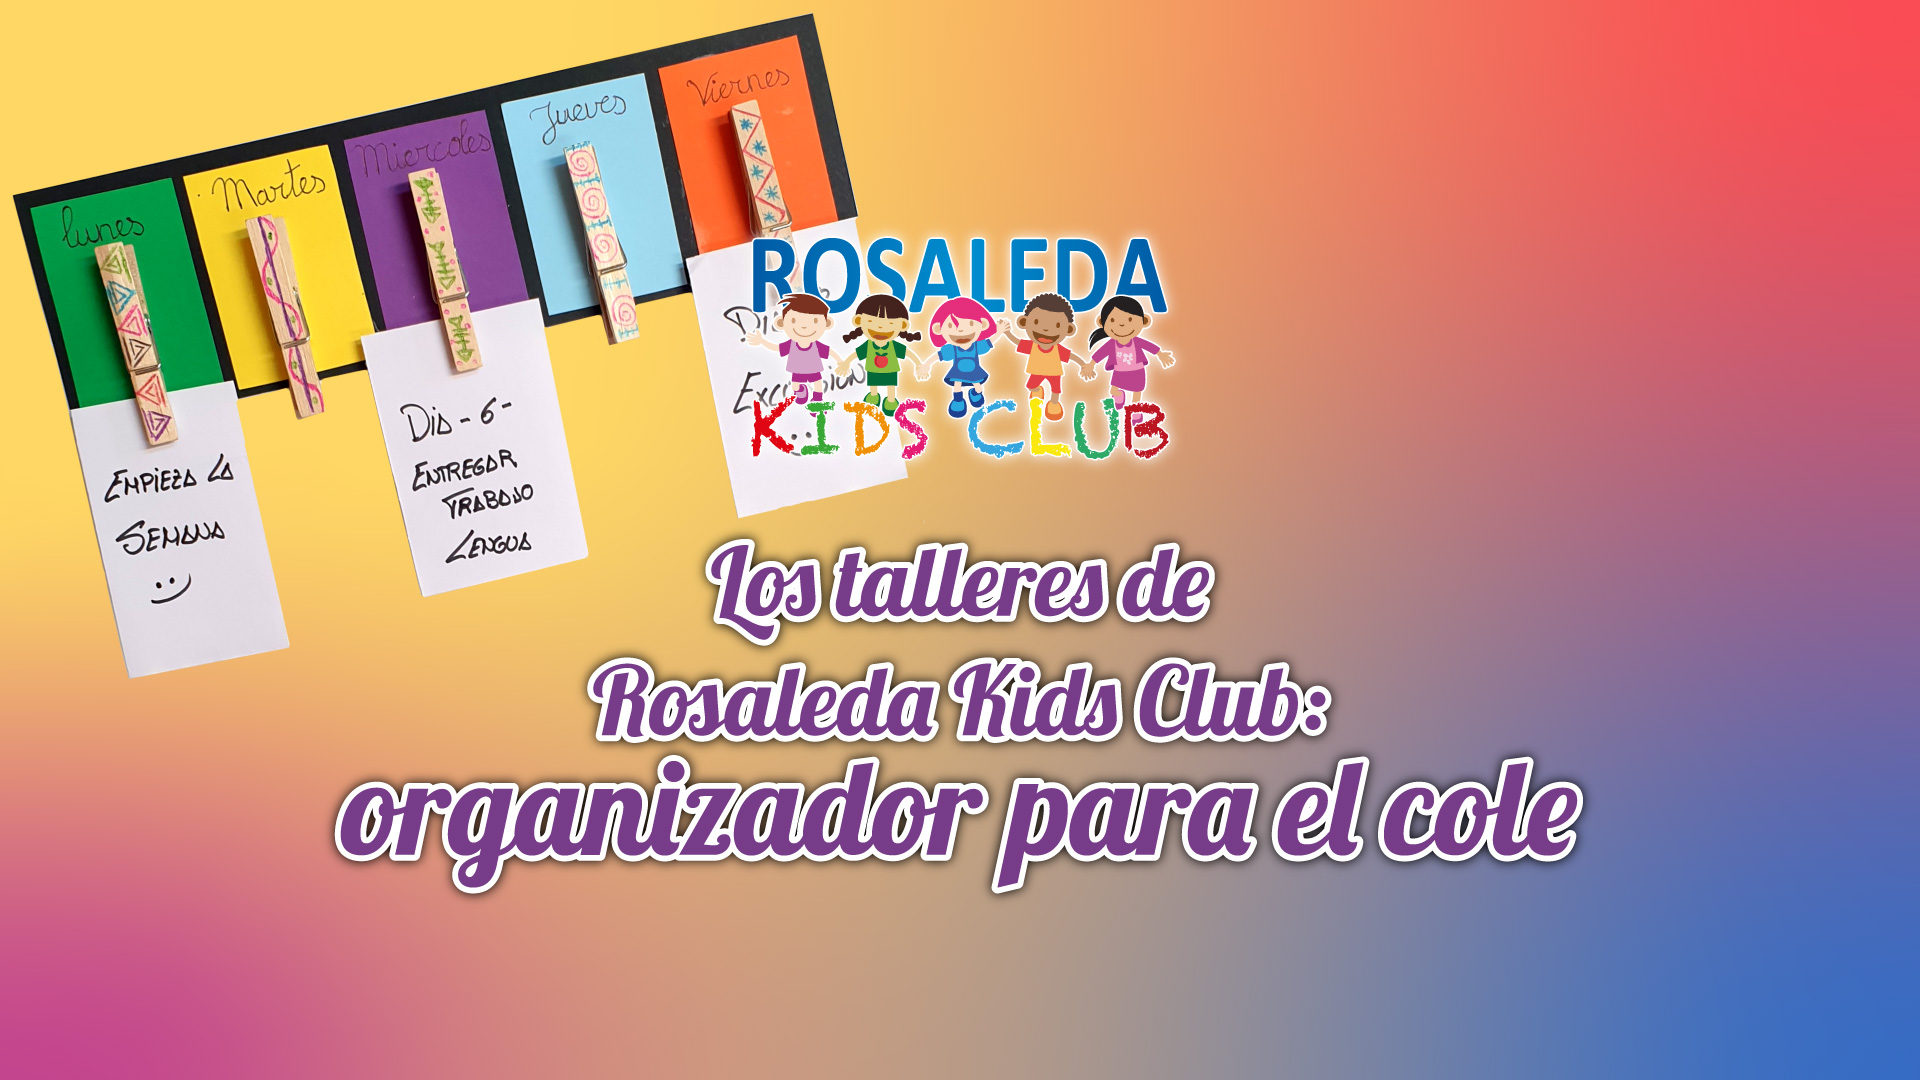 Los talleres de Rosaleda Kids Club: organizadores semanales